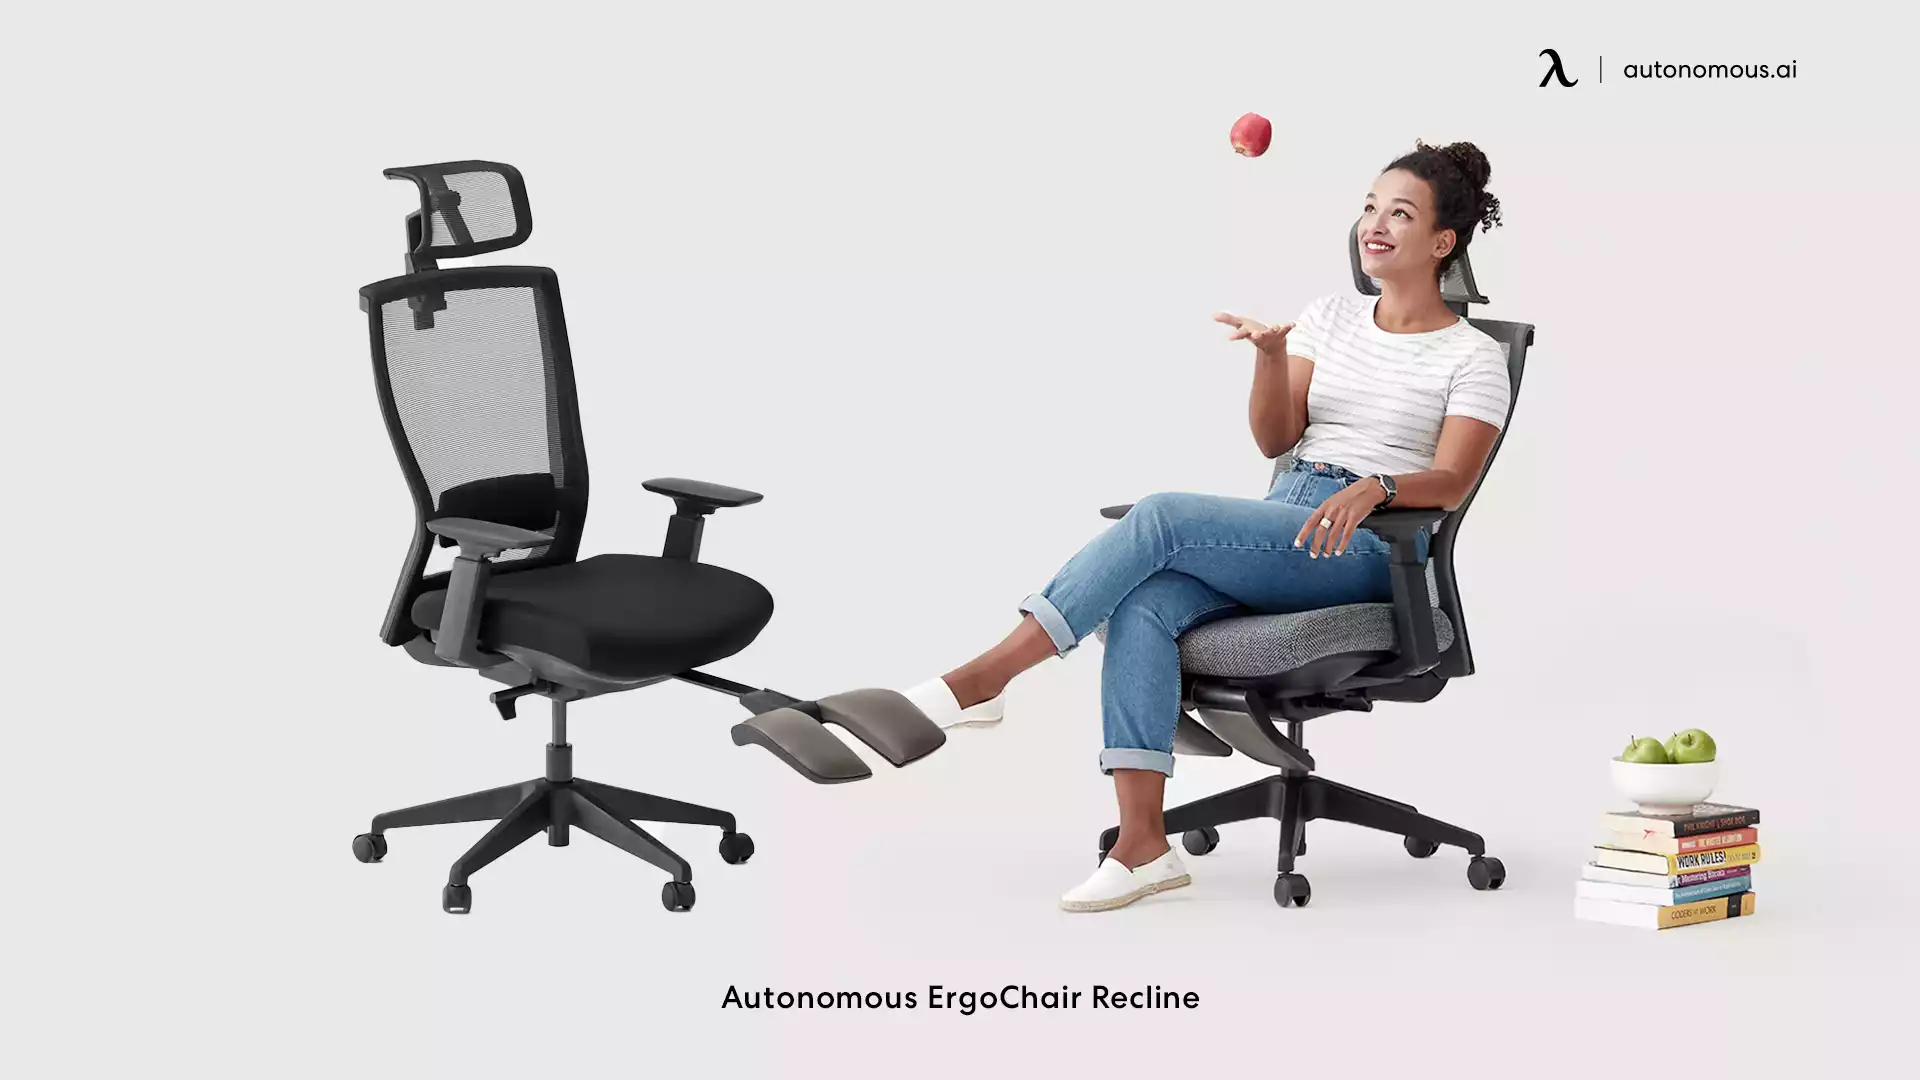 ErgoChair Recline comfy home office chair